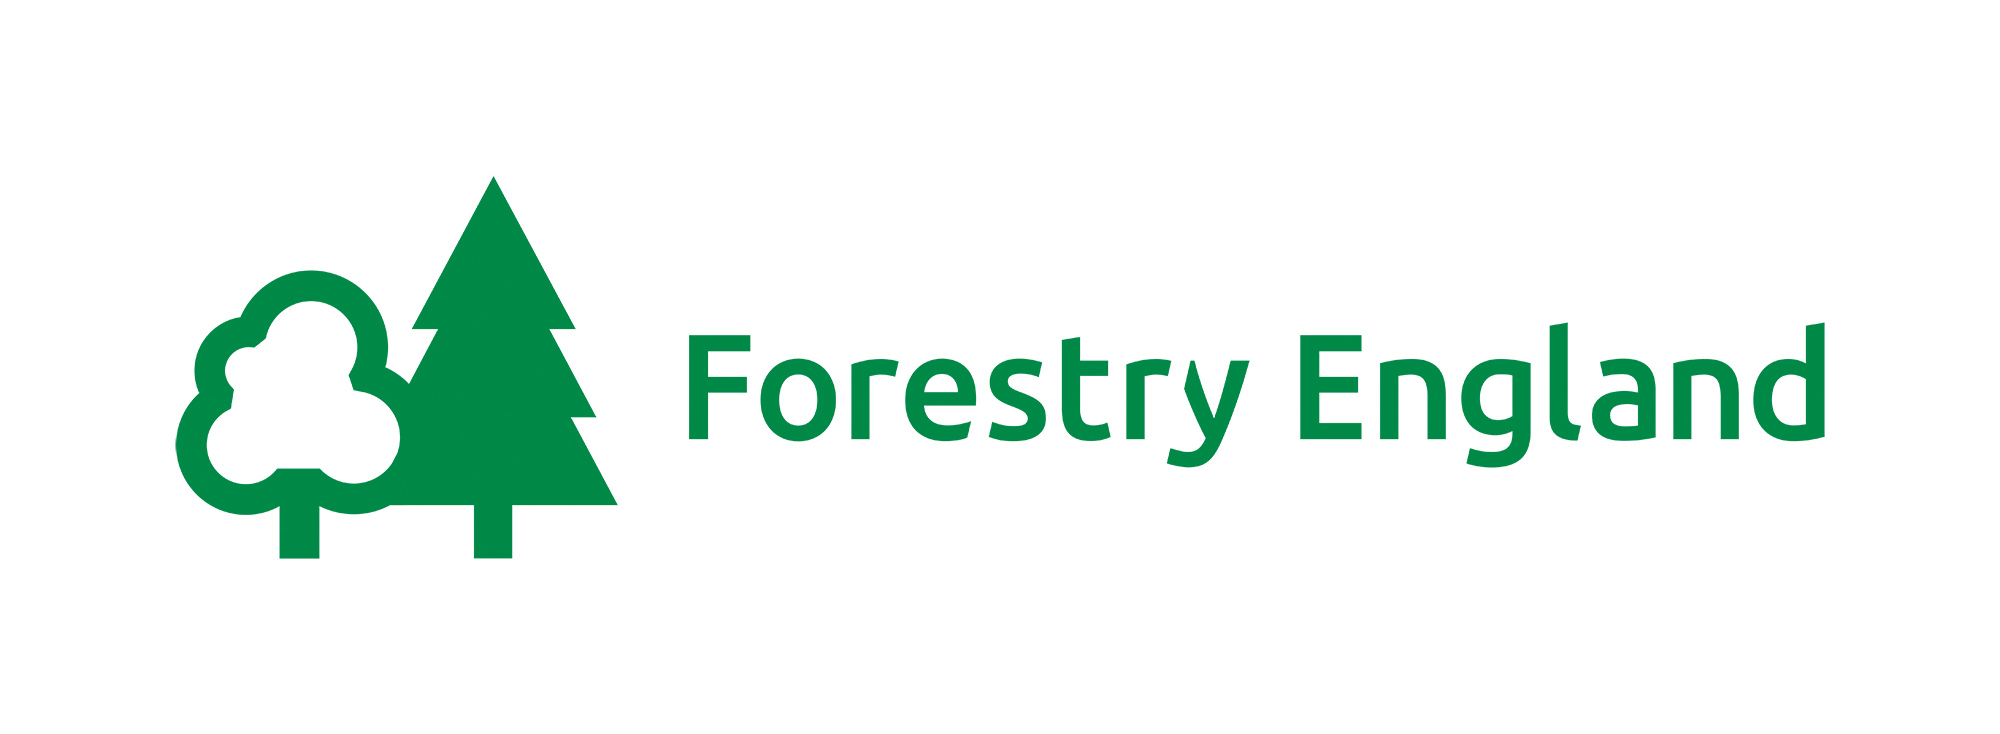 FE_Primary_Logo_Green.jpg